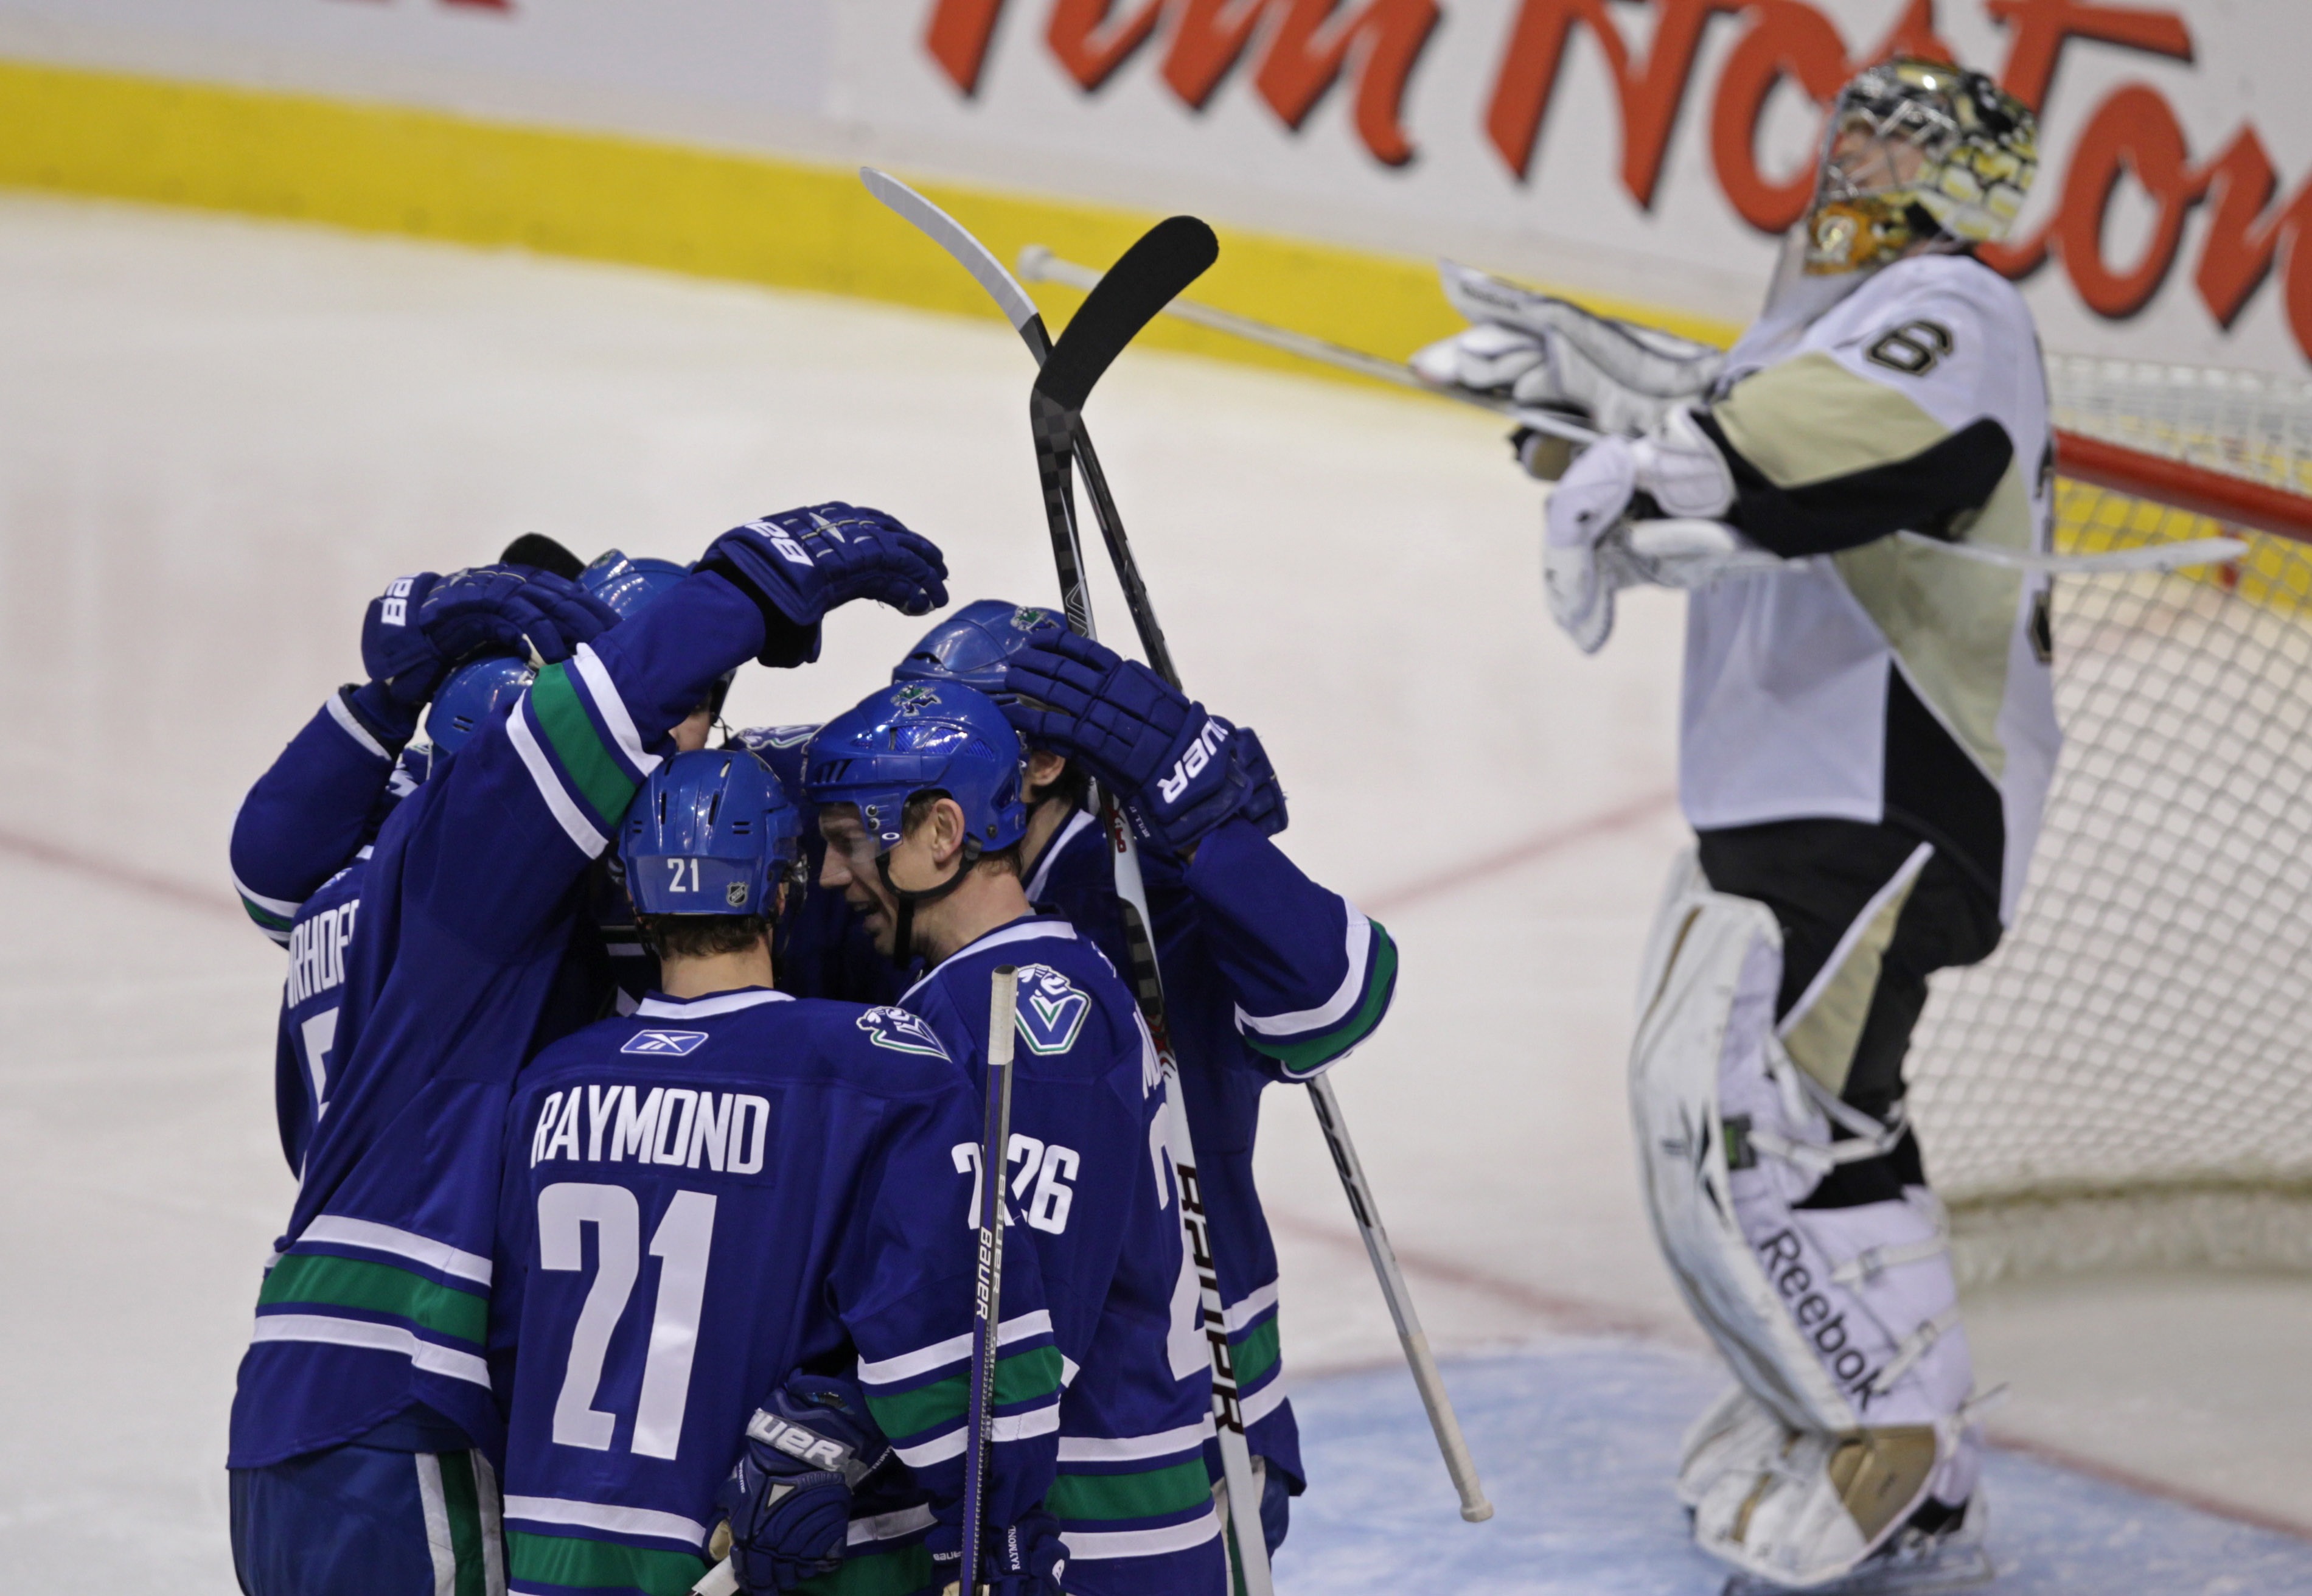 Vancouverstjärnan Henrik Sedin gjorde tre poäng när Canucks slog Pittsburgh Penguins med 6-2.